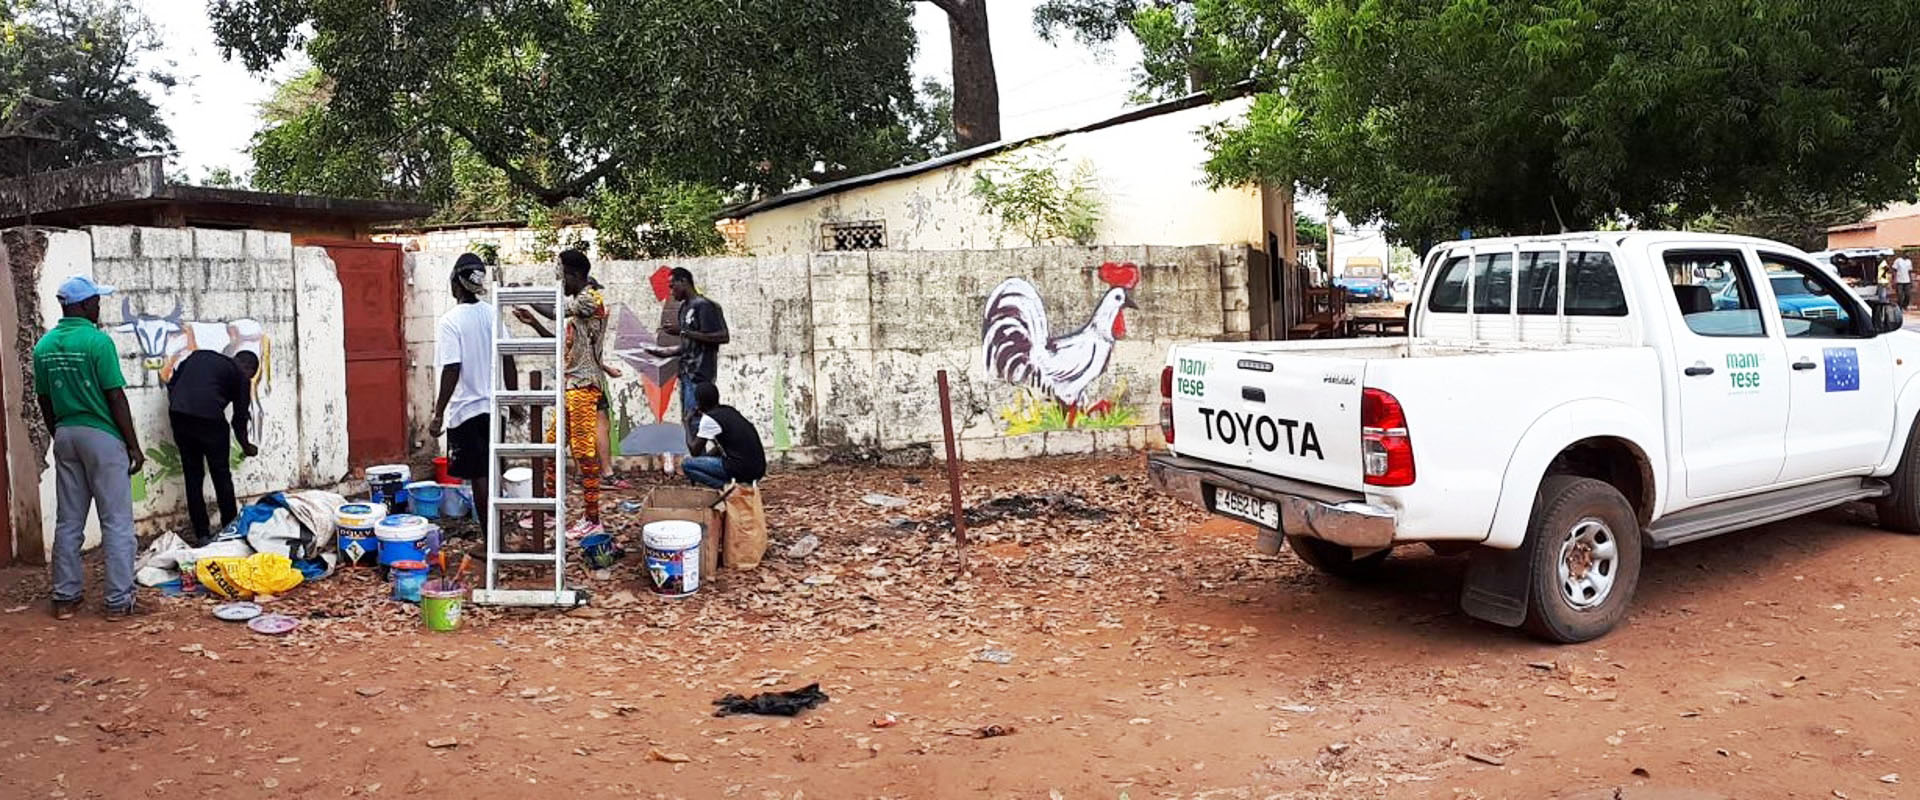 street art graffiti animali Mani Tese Guinea Bissau 2017